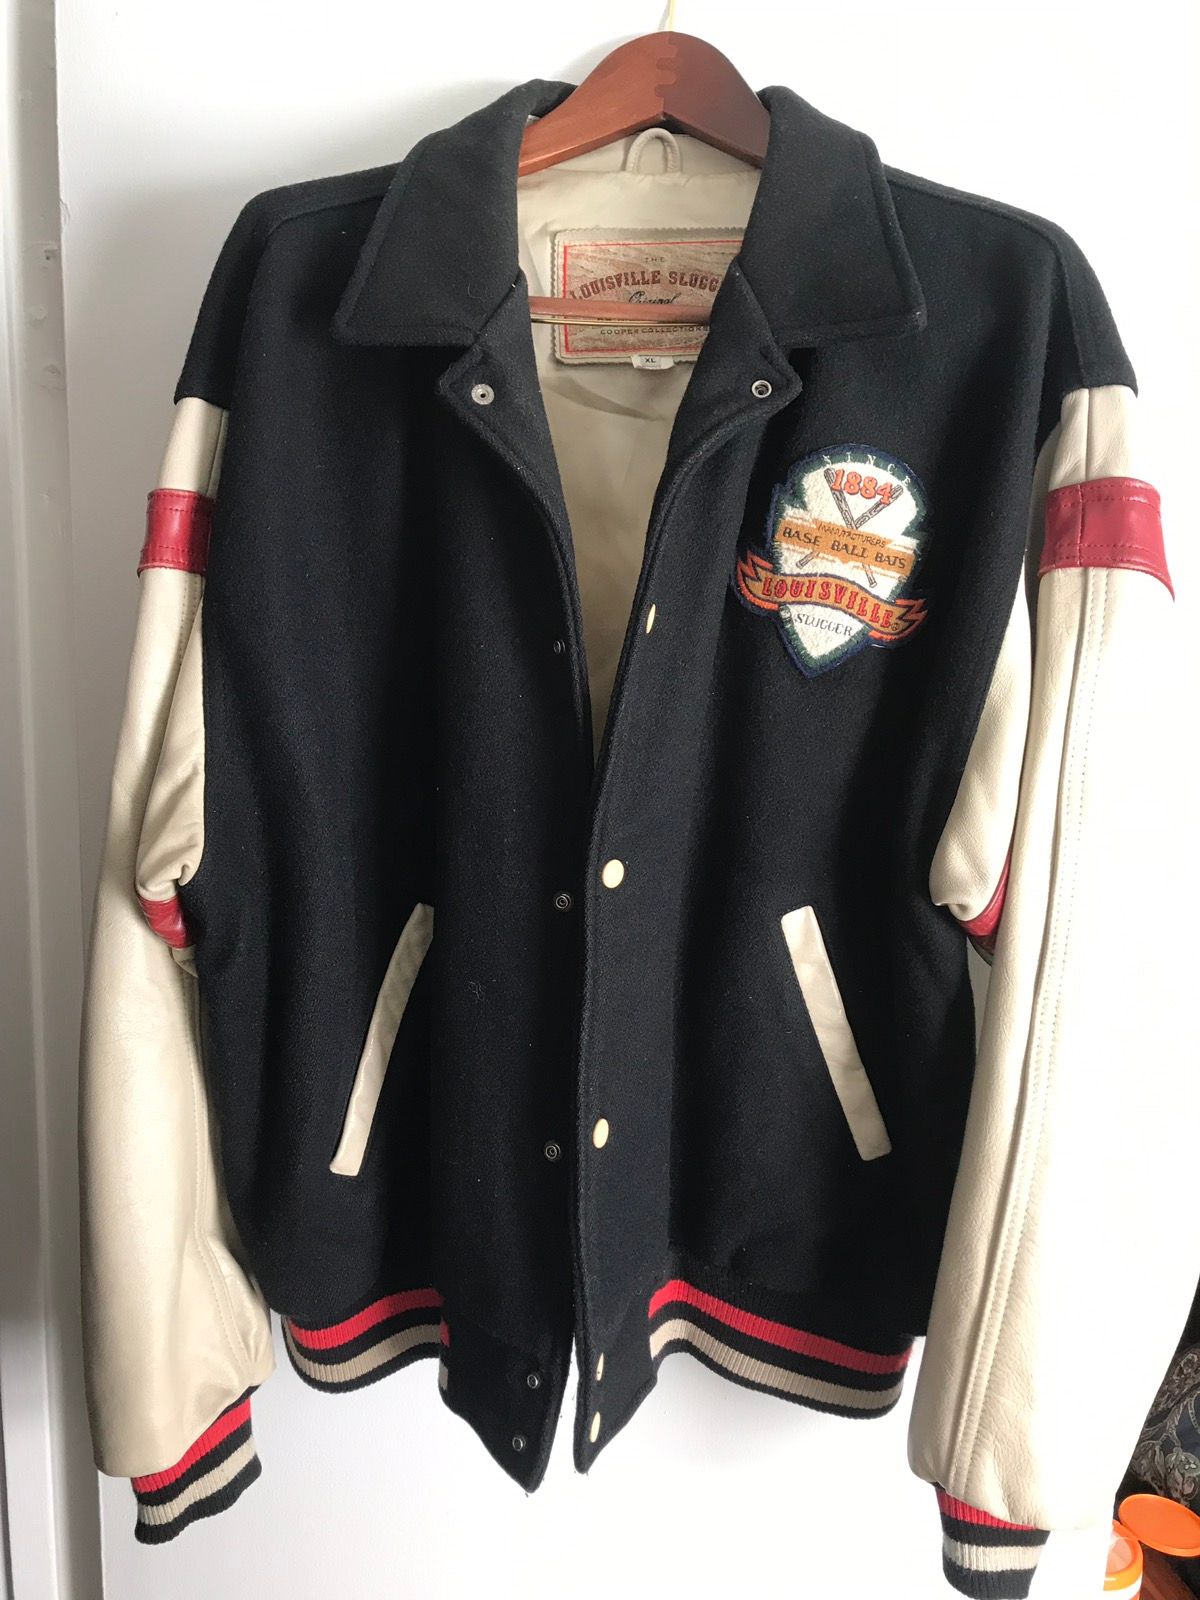 Louisville Slugger Vintage Letterman Jacket